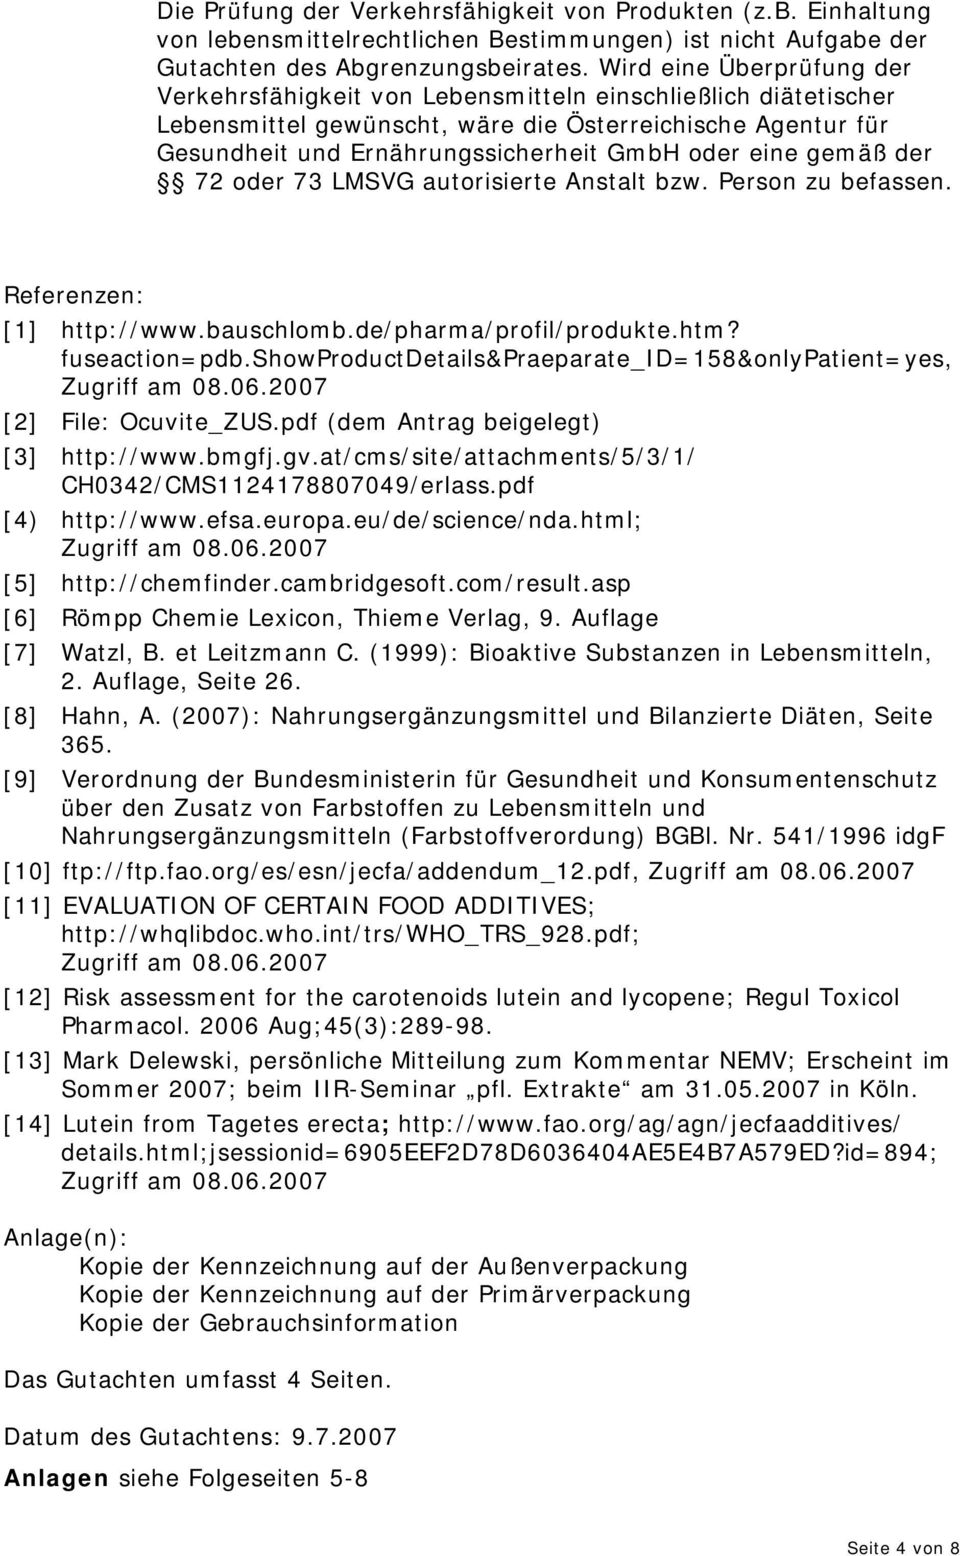 eine gemäß der 72 oder 73 LMSVG autorisierte Anstalt bzw. Person zu befassen. Referenzen: [1] http://www.bauschlomb.de/pharma/profil/produkte.htm? fuseaction=pdb.